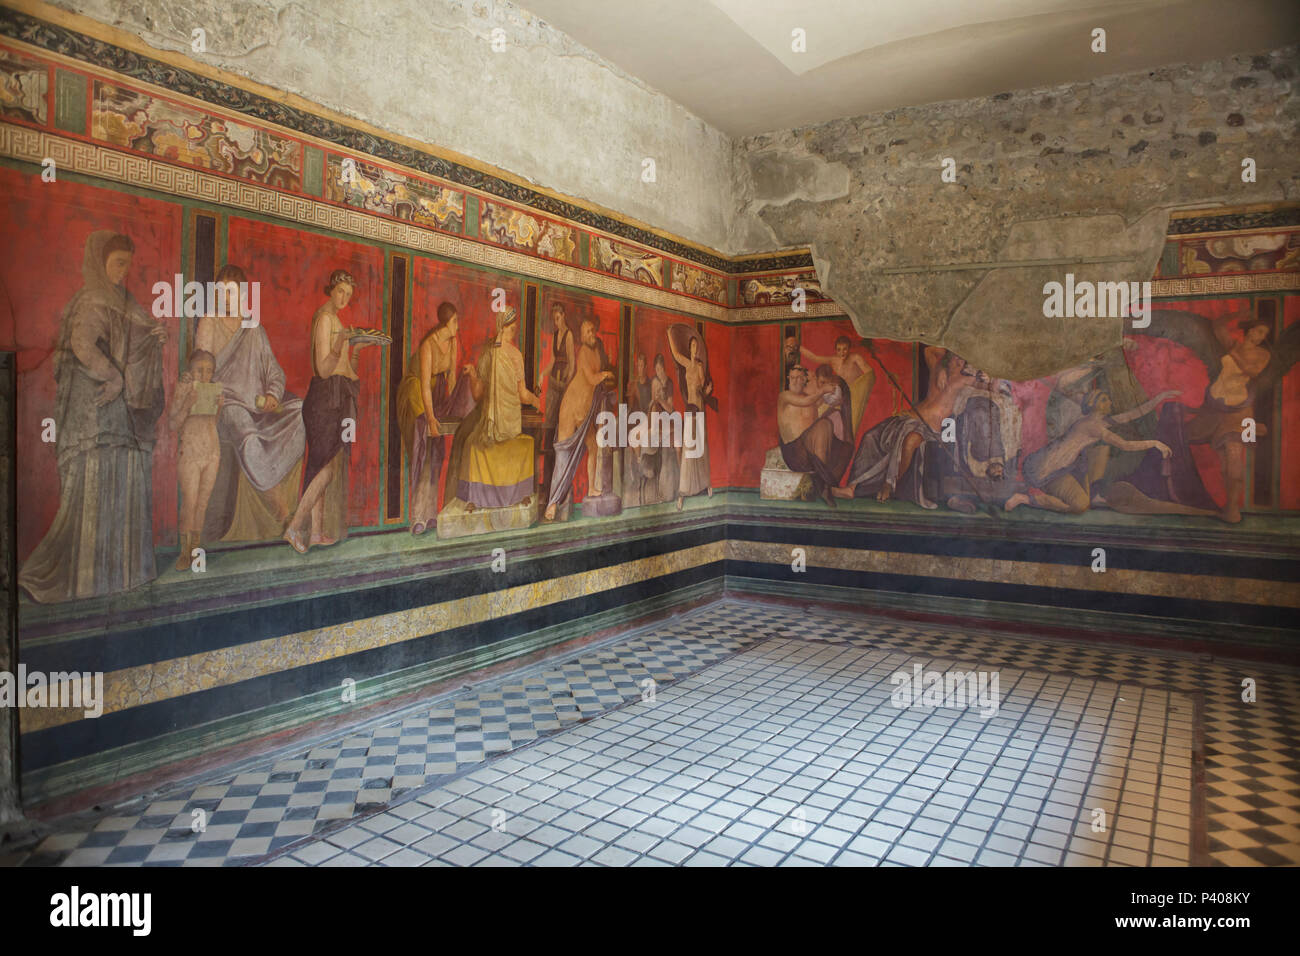 Dionysischen Mysterien (Bacchian Geheimnisse) im Römischen Fresken in den Triclinium (Römische Speisesaal) in der Villa der Mysterien (Villa dei Misteri) in die archäologische Stätte von Pompeji (Pompei) in der Nähe von Neapel, Kampanien, Italien dargestellt. Einleitung Ritus von der geheimnisvollen Kult des Dionysos (Bacchus) ist wahrscheinlich in der Fresken dargestellt. Stockfoto